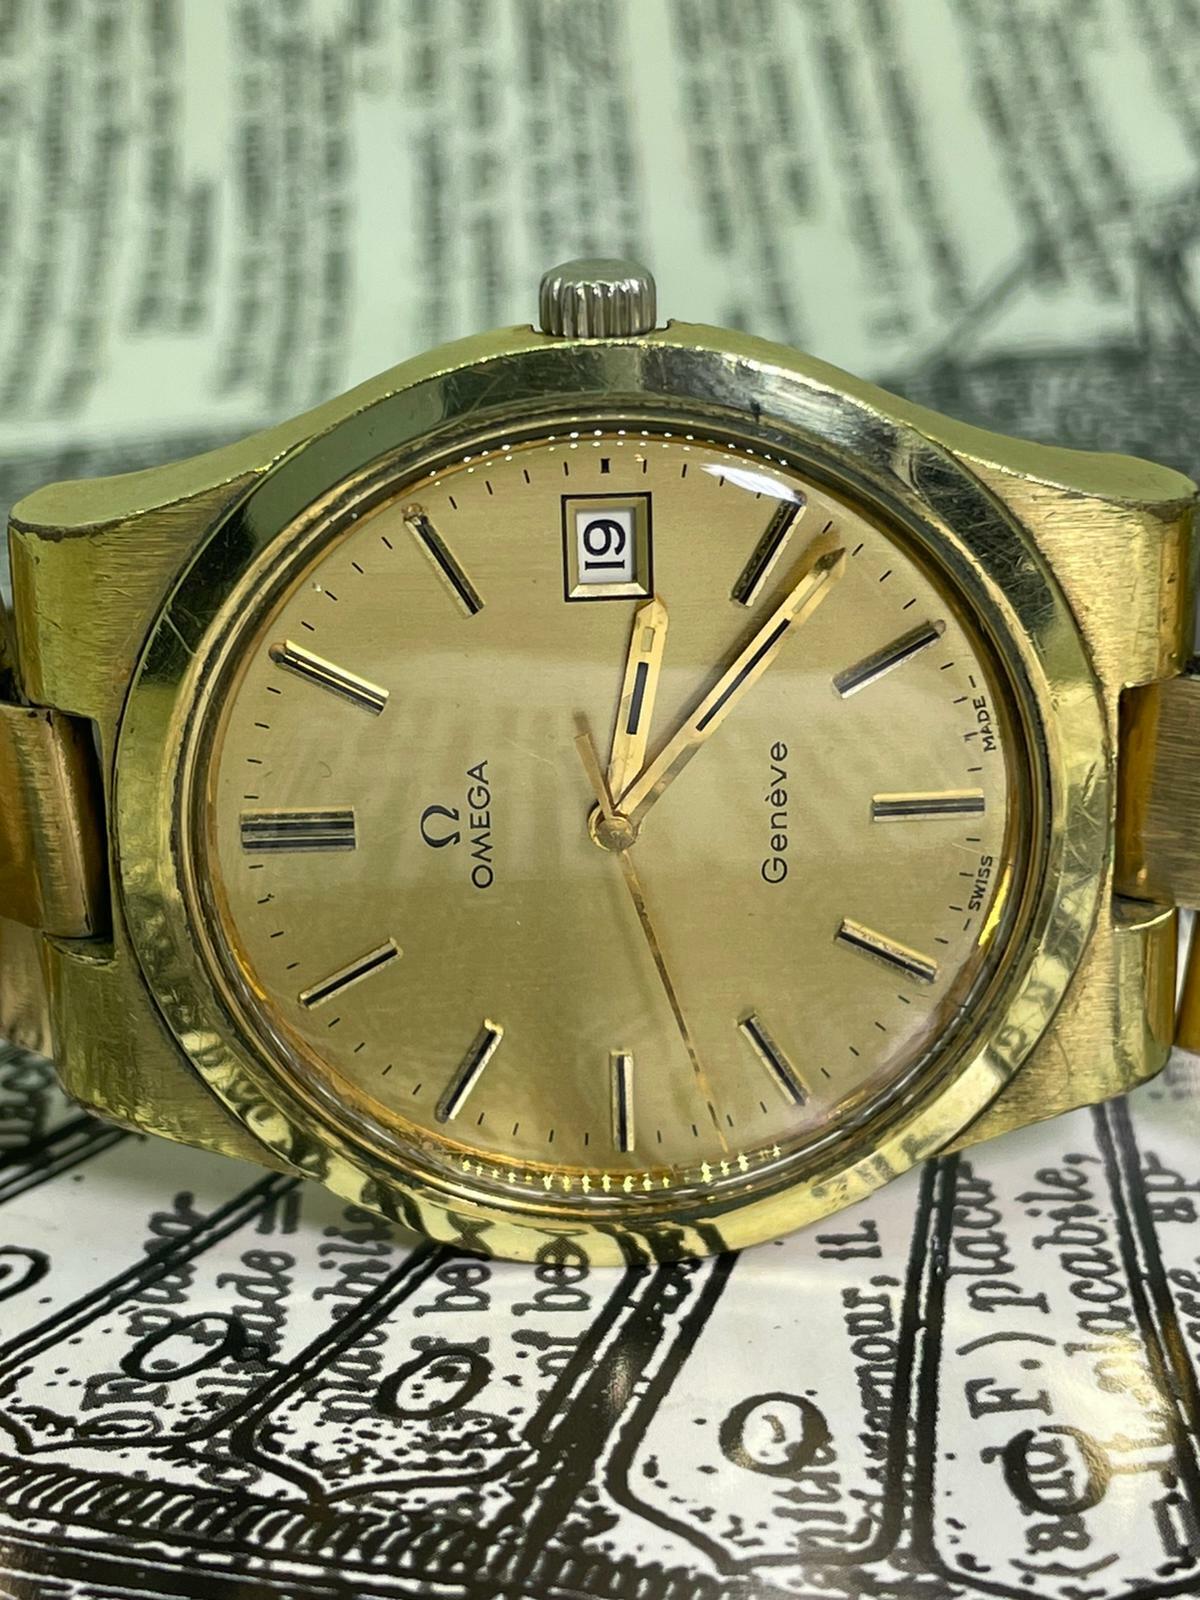 Cette Omega Geneve Vintage sophistiquée date de 1974,
malgré son âge, cette montre-bracelet intemporelle et élégante est en bon état et fonctionne très bien

Elle est équipée d'un mouvement manuel (à remontage manuel) calibre 1030, 17 rubis
& se